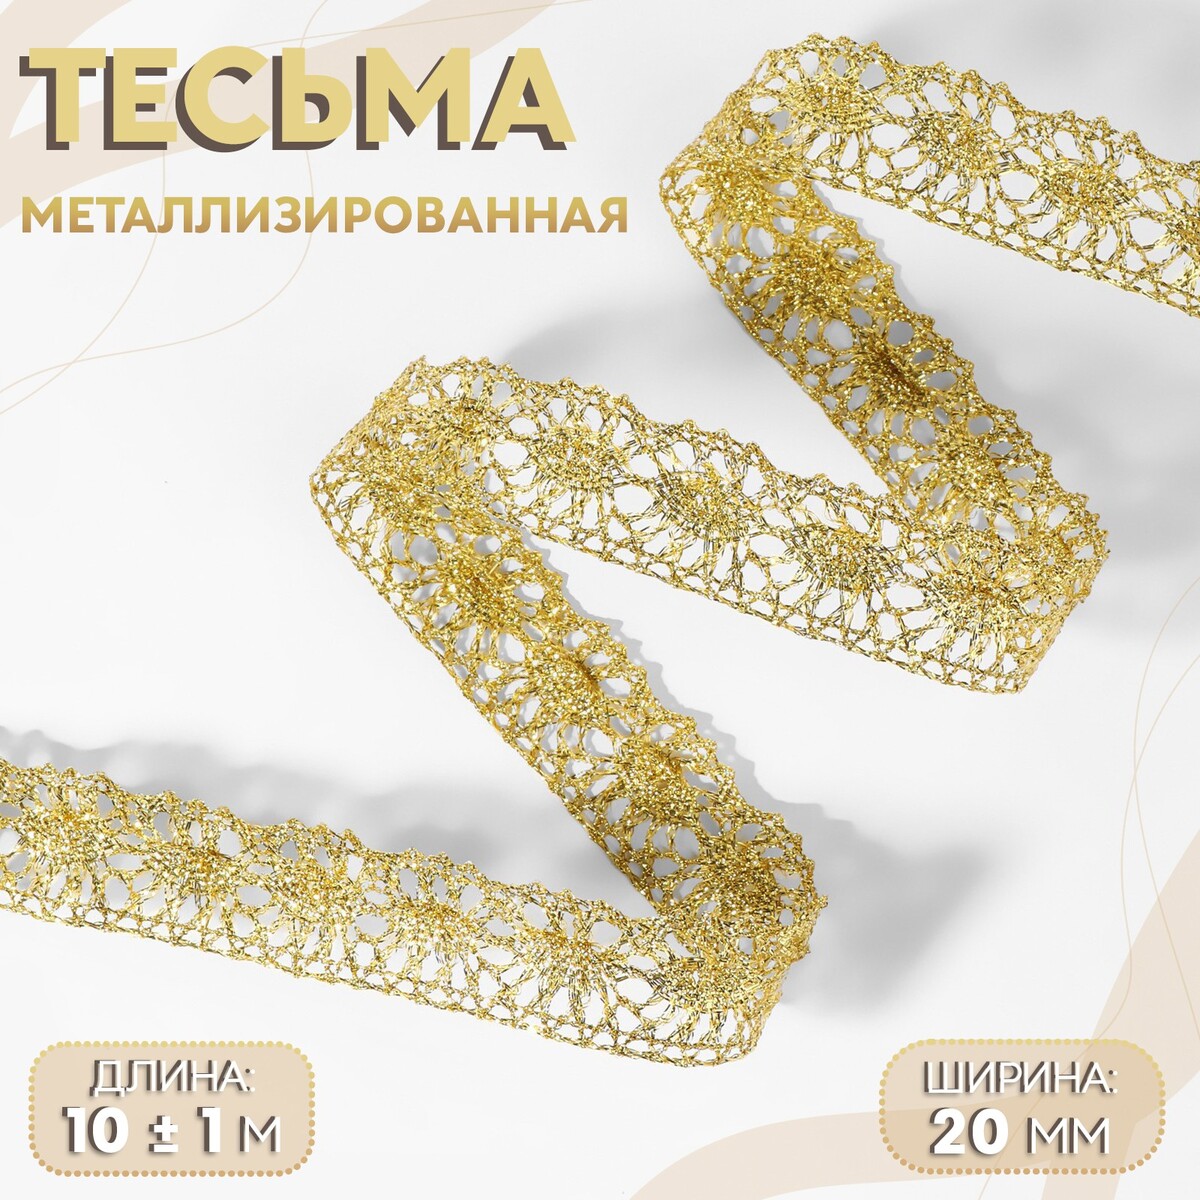 Тесьма декоративная, металлизированная, 10 ± 1 м, 20 мм, цвет золотой тесьма декоративная металлизированная 10 ± 1 м 20 мм серебряный